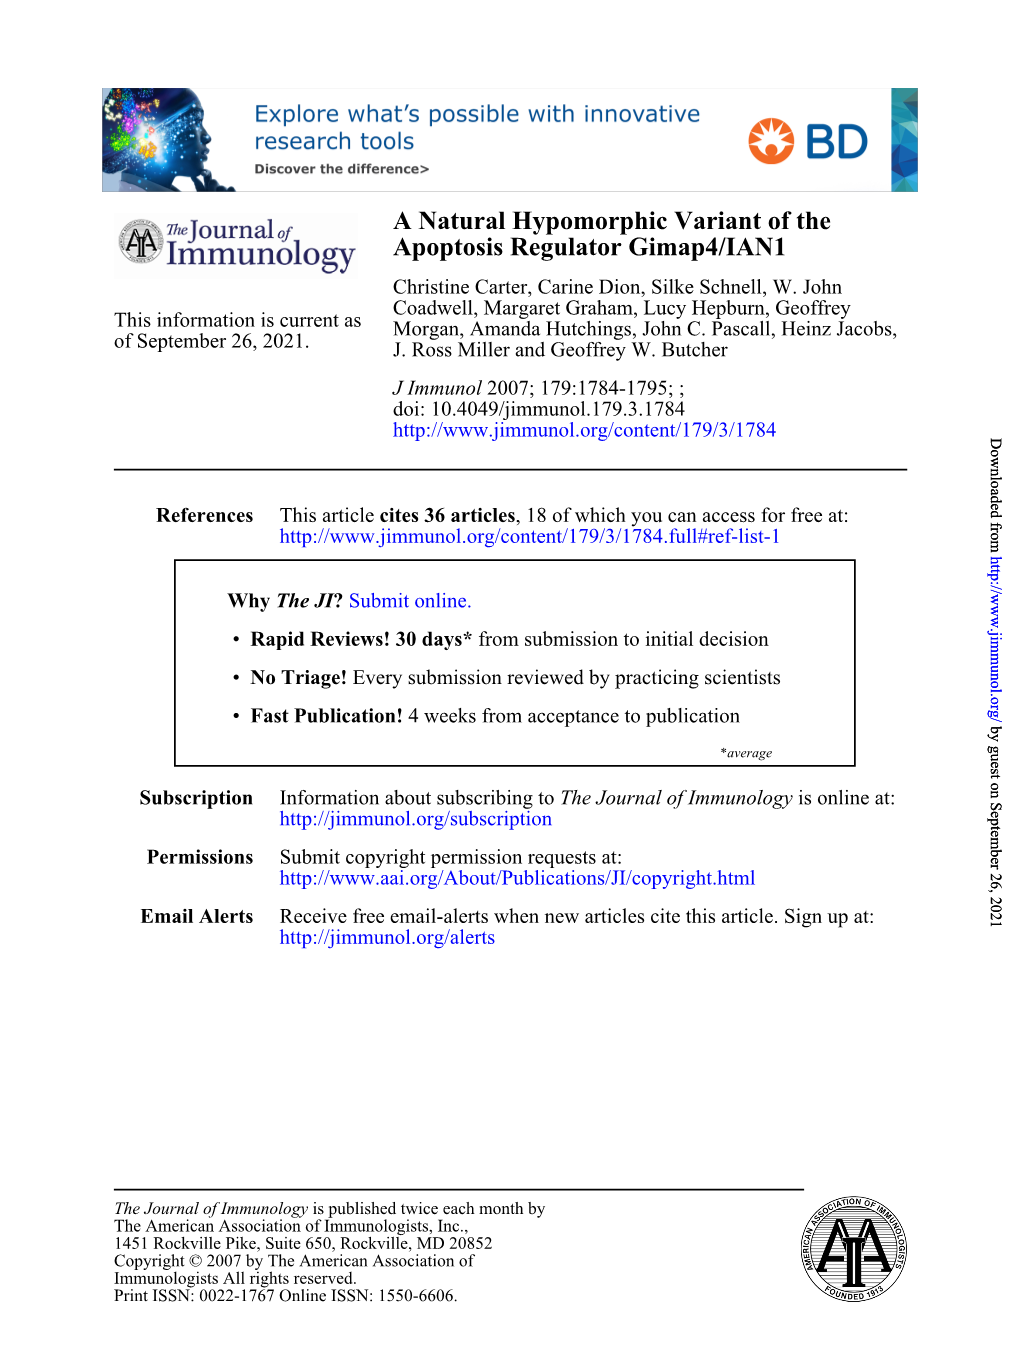 Apoptosis Regulator Gimap4/IAN1 a Natural Hypomorphic Variant Of